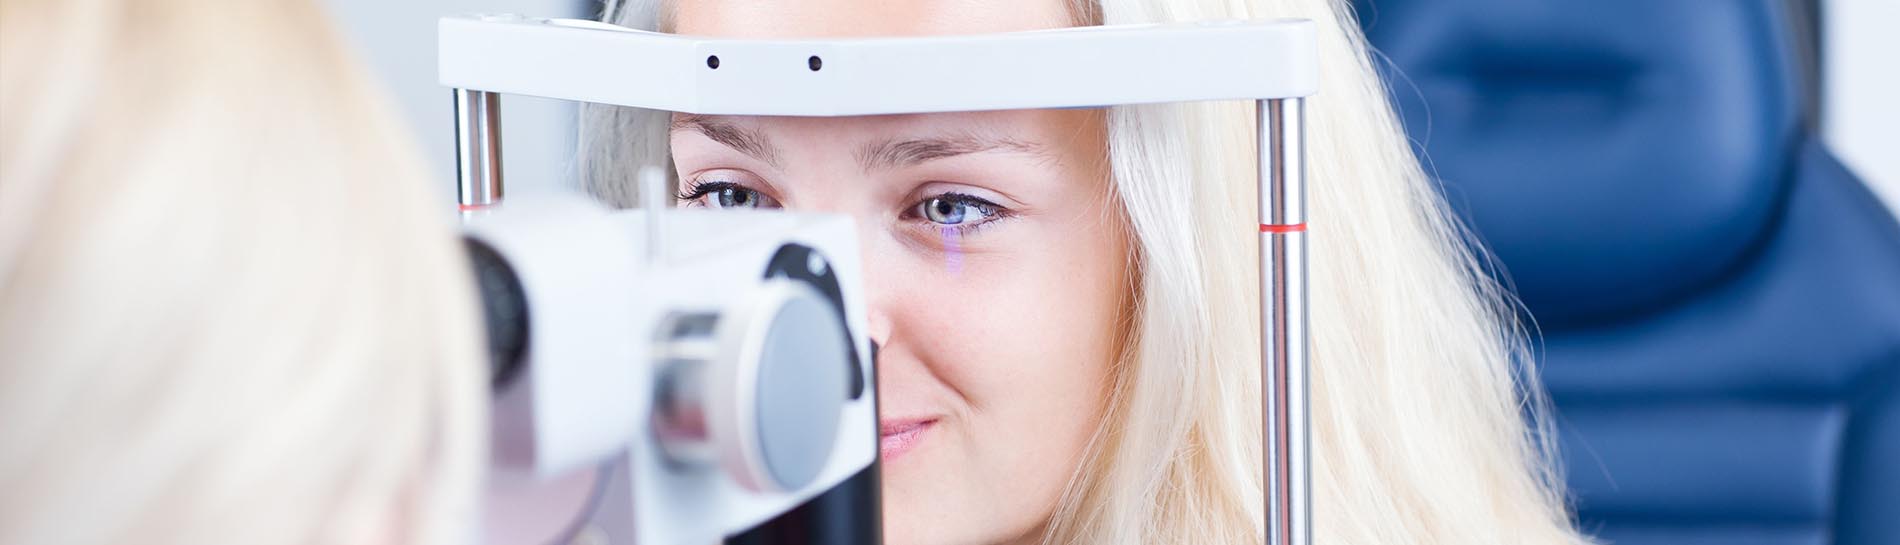 hogyan lehet javítani az emberi látást hogyan lehet megismerni a látását dioptriában